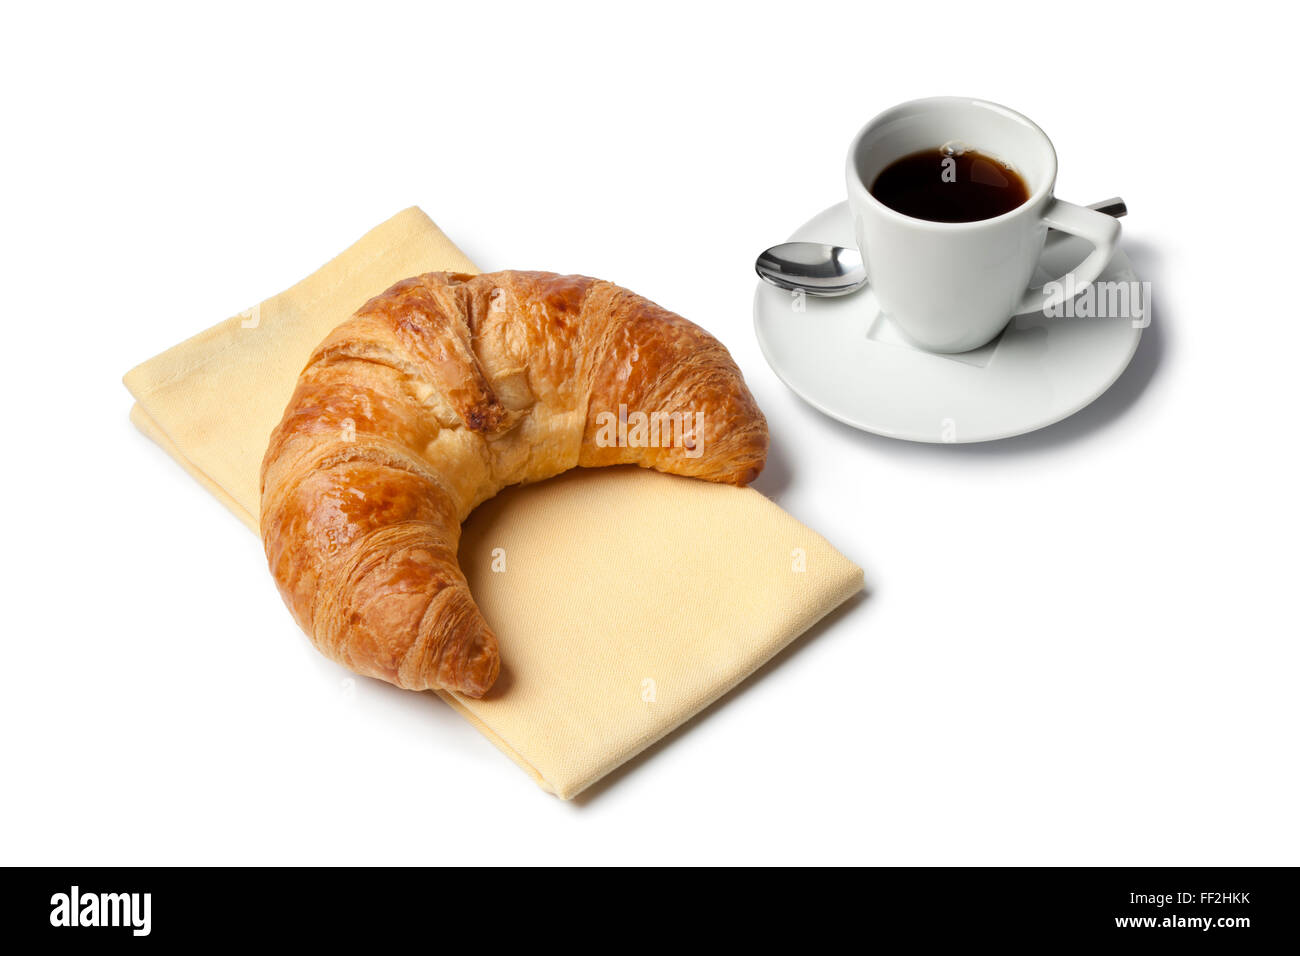 La prima colazione con croissant francesi e caffè espresso su sfondo bianco Foto Stock